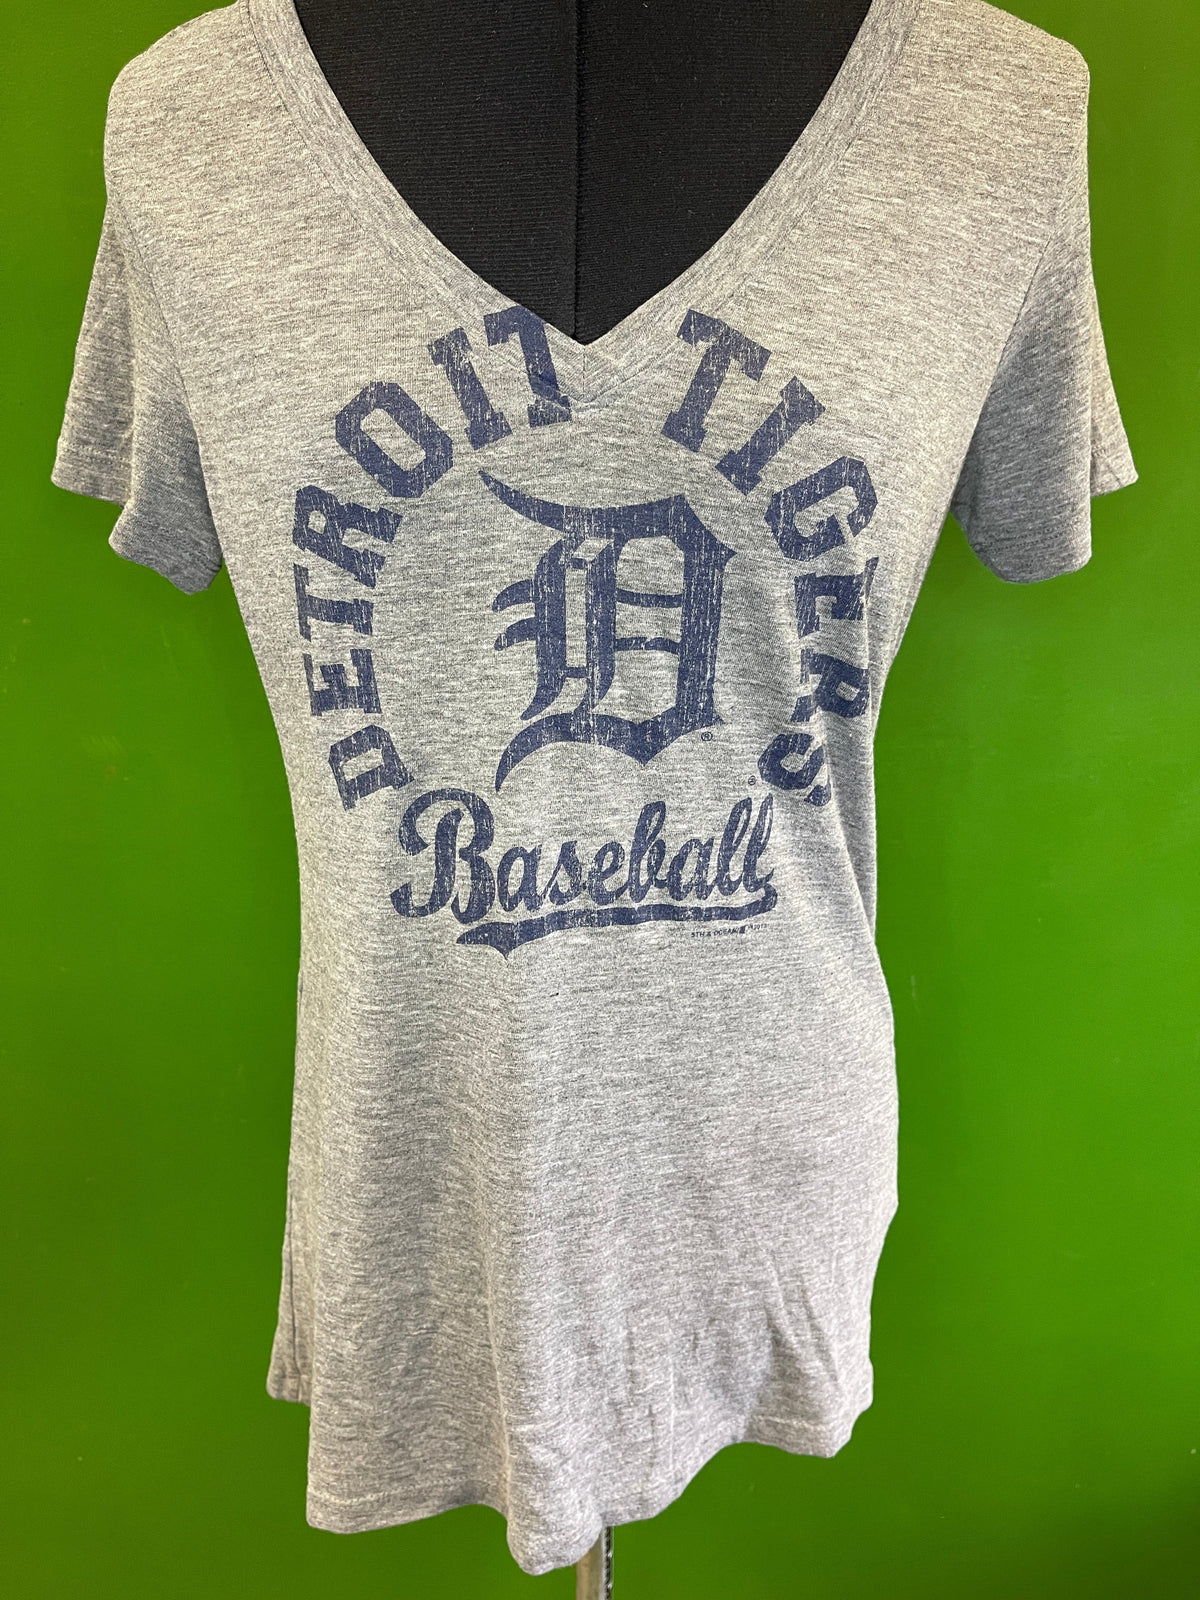 MLB Detroit Tigers 5th & Ocean V-Neck T-Shirt Women's Medium